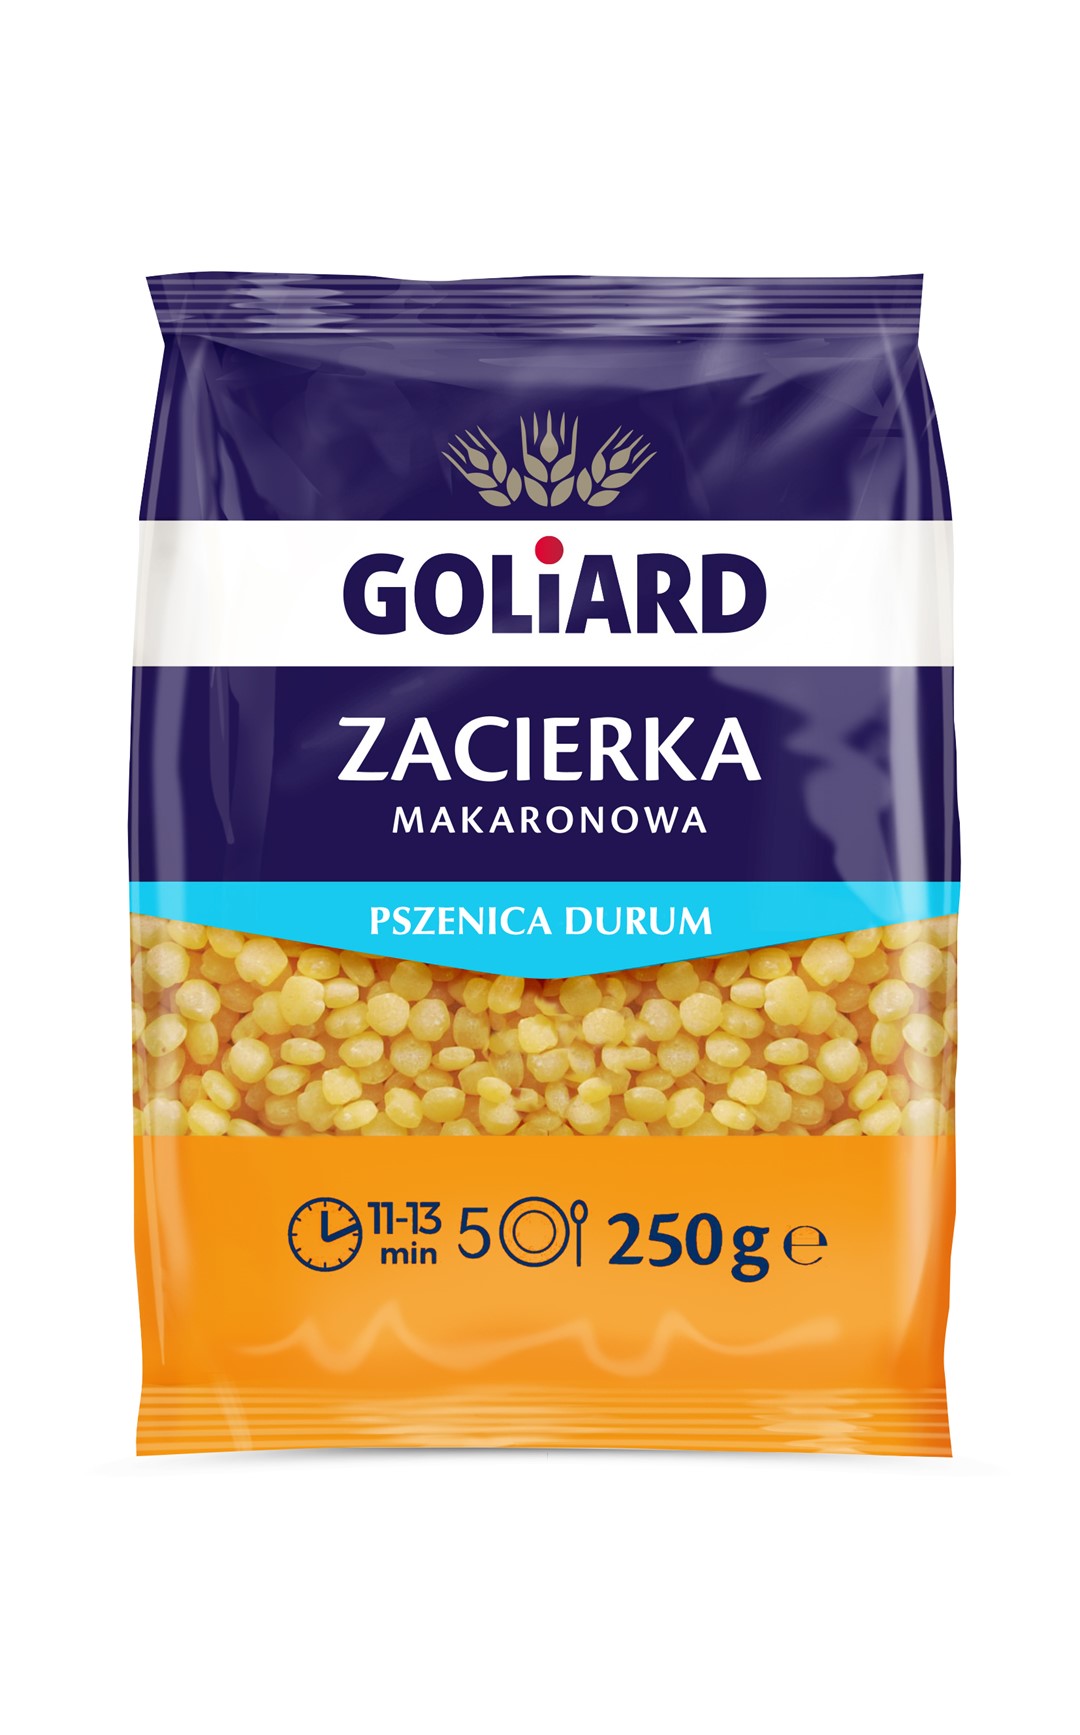 GOLIARD MAKARON ZACIERKA 250g/24